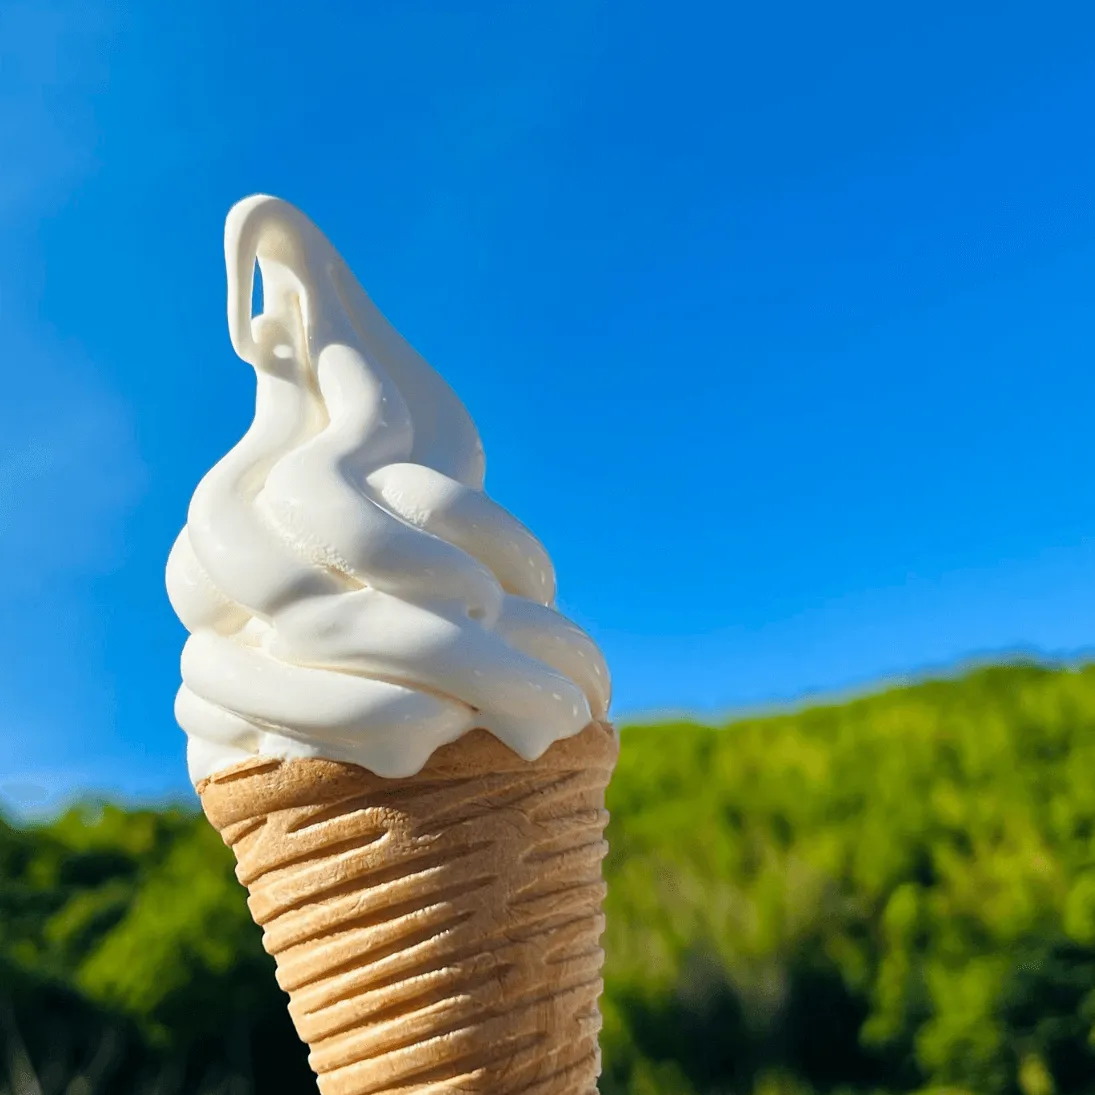 ソフトクリームの写真